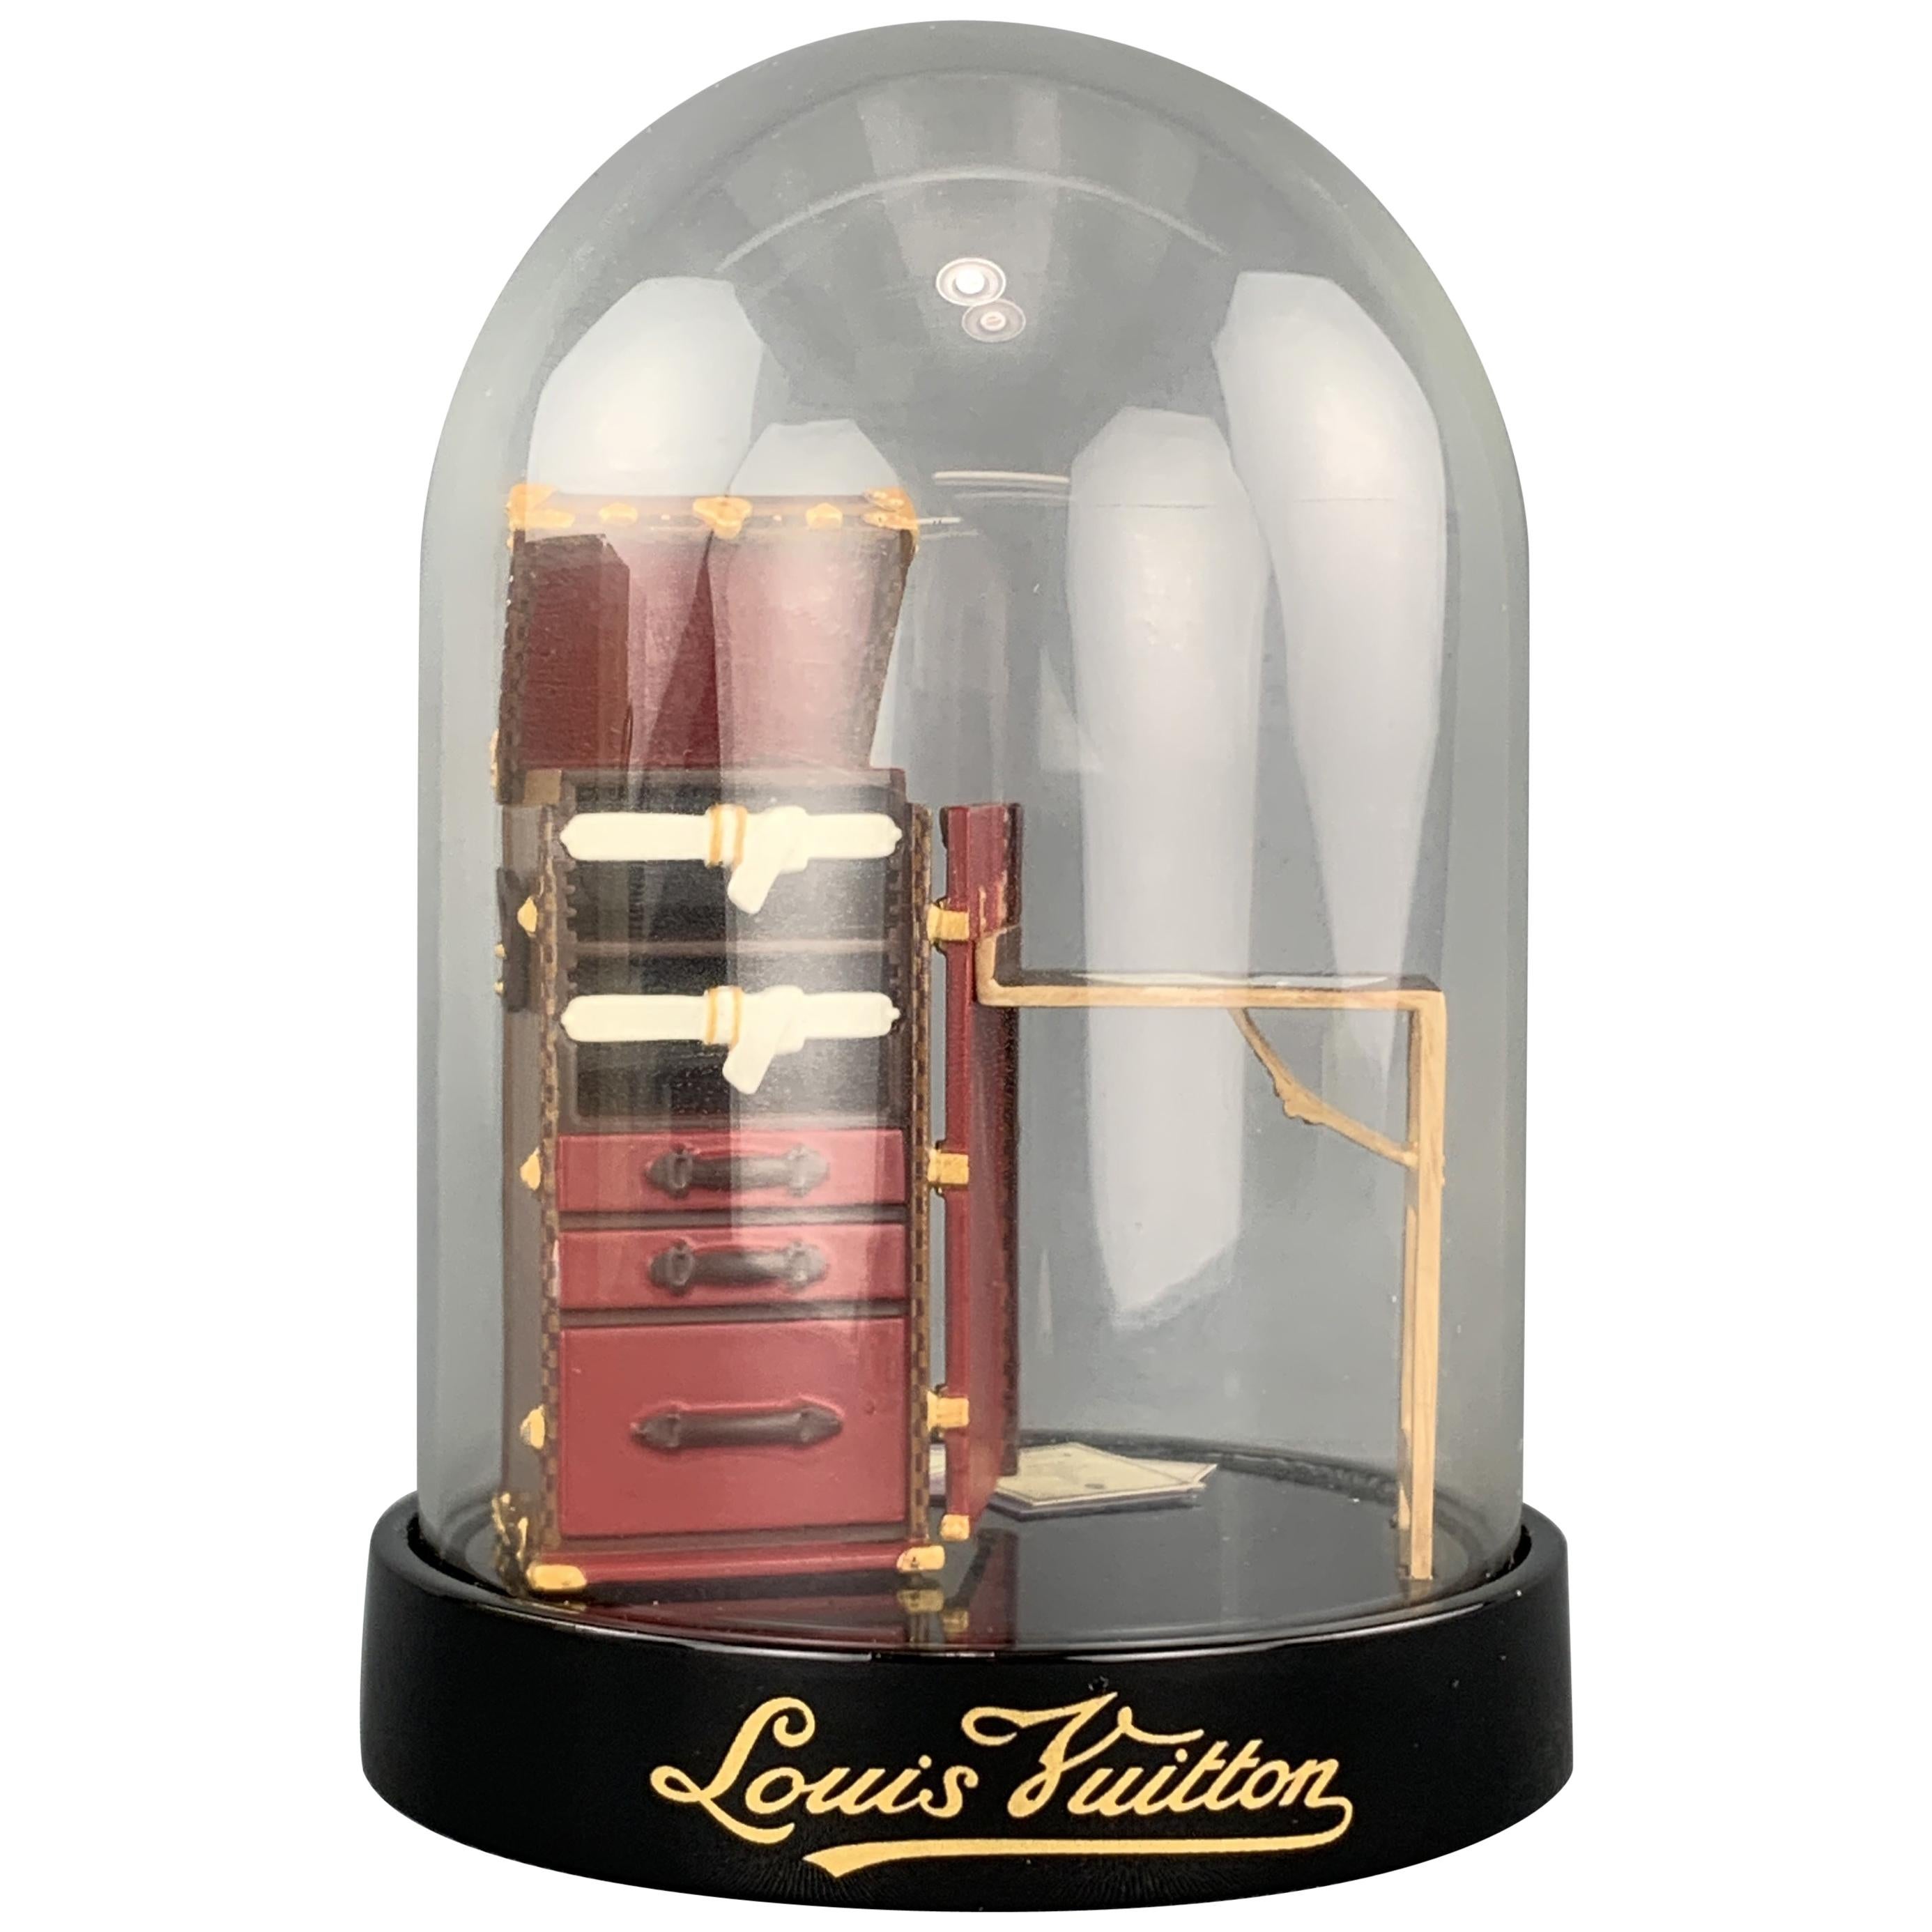 LOUIS VUITTON Glass Luggage and Stokowski Desk Snow Globe at